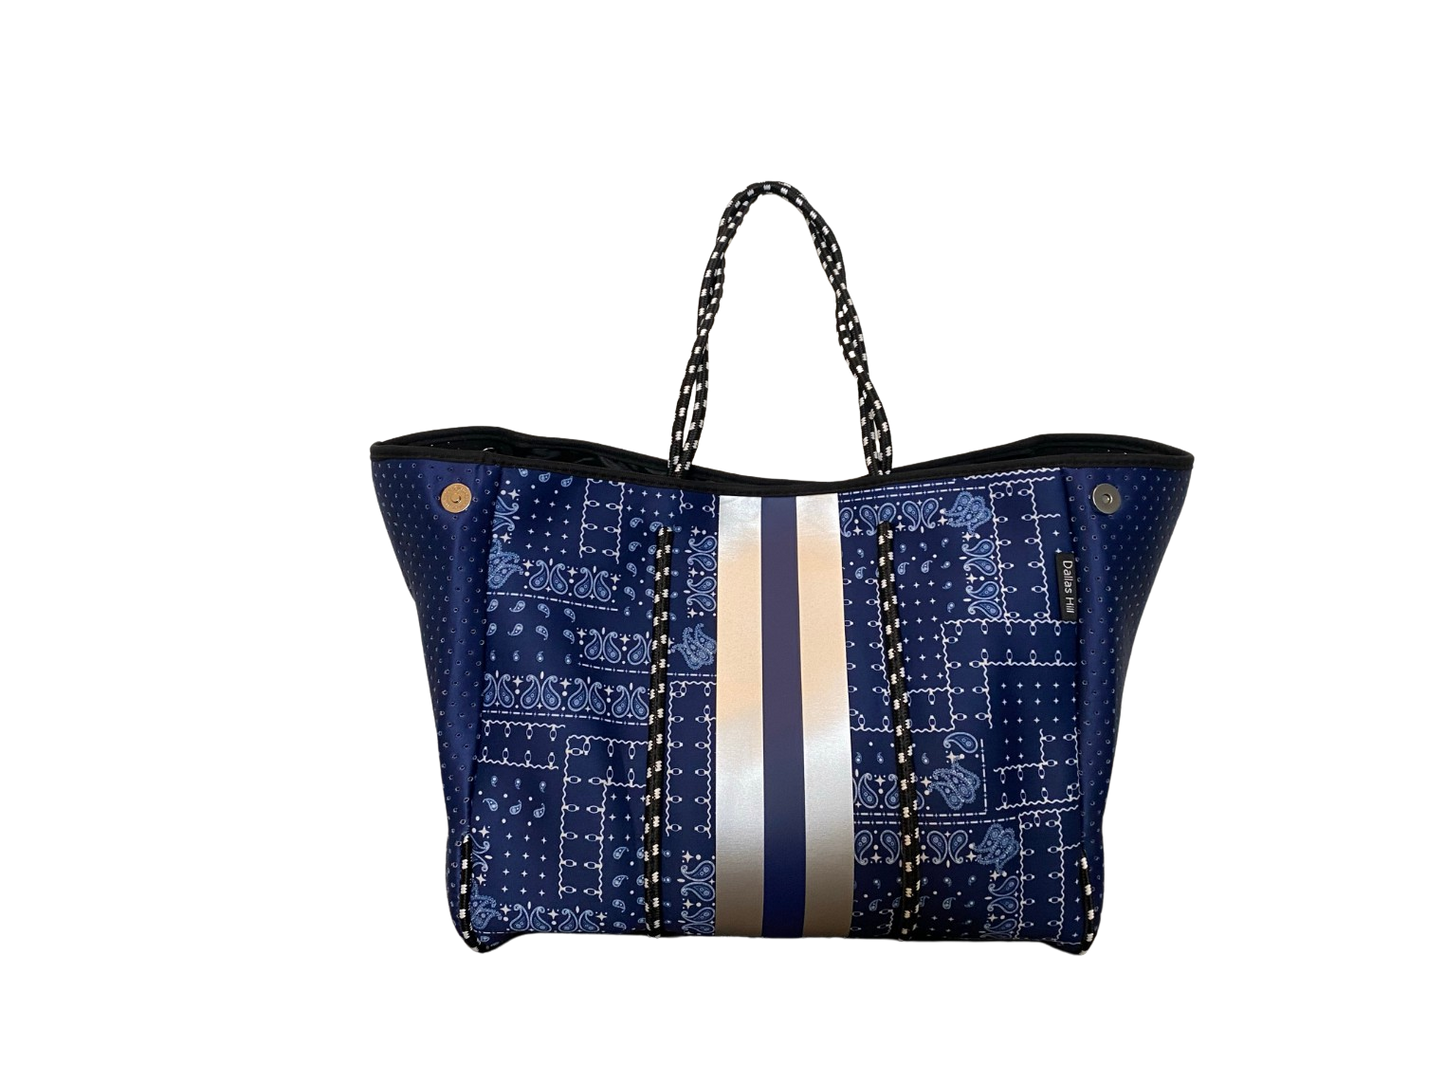 Neoprene Tote Bag Bandanna Blue by Dallas Hill Design